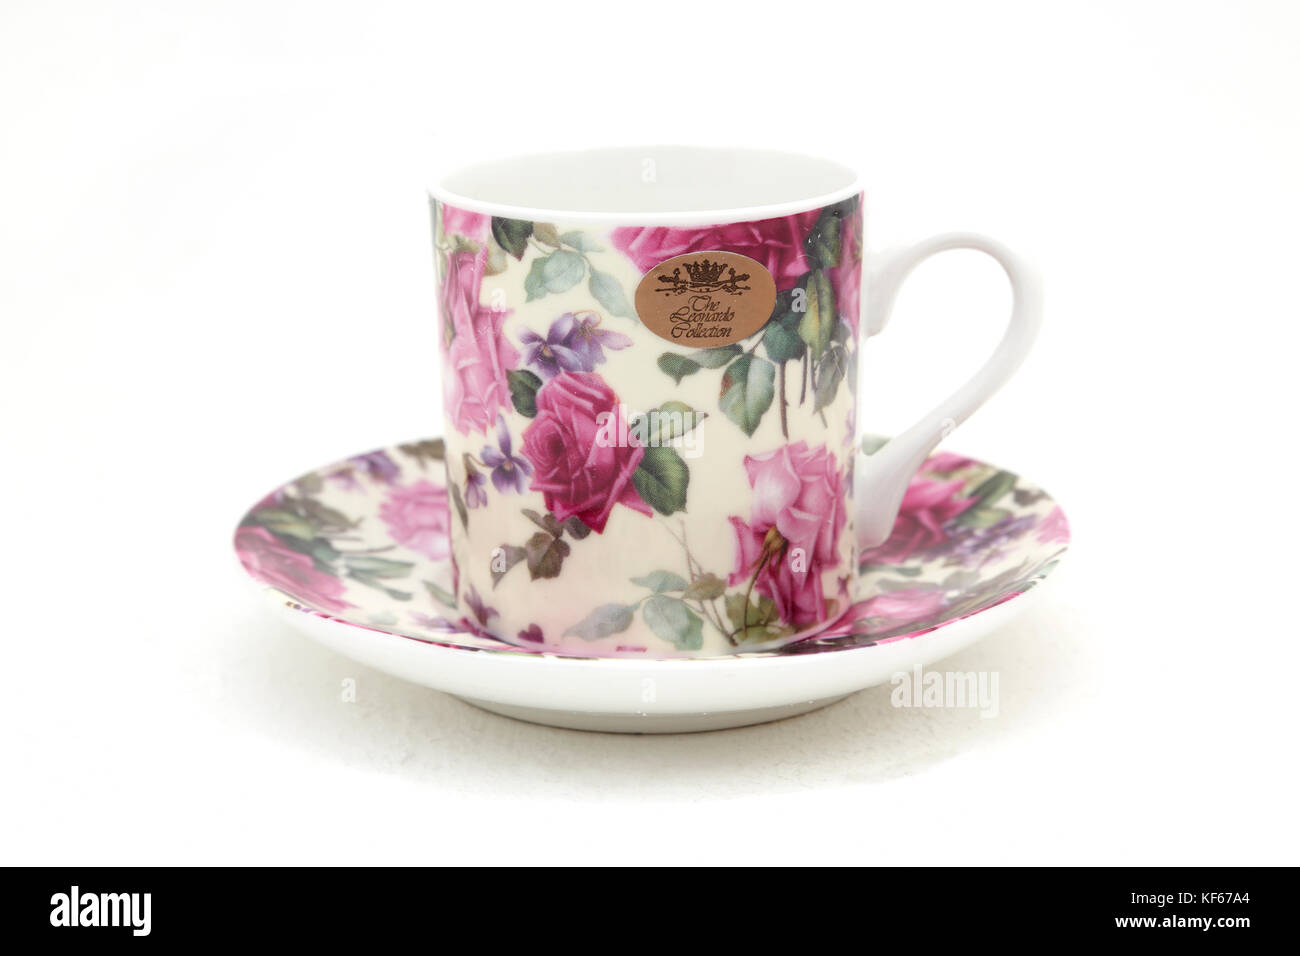 Leonardo Sammlung China Tasse und Untertasse mit floralem Design  Stockfotografie - Alamy